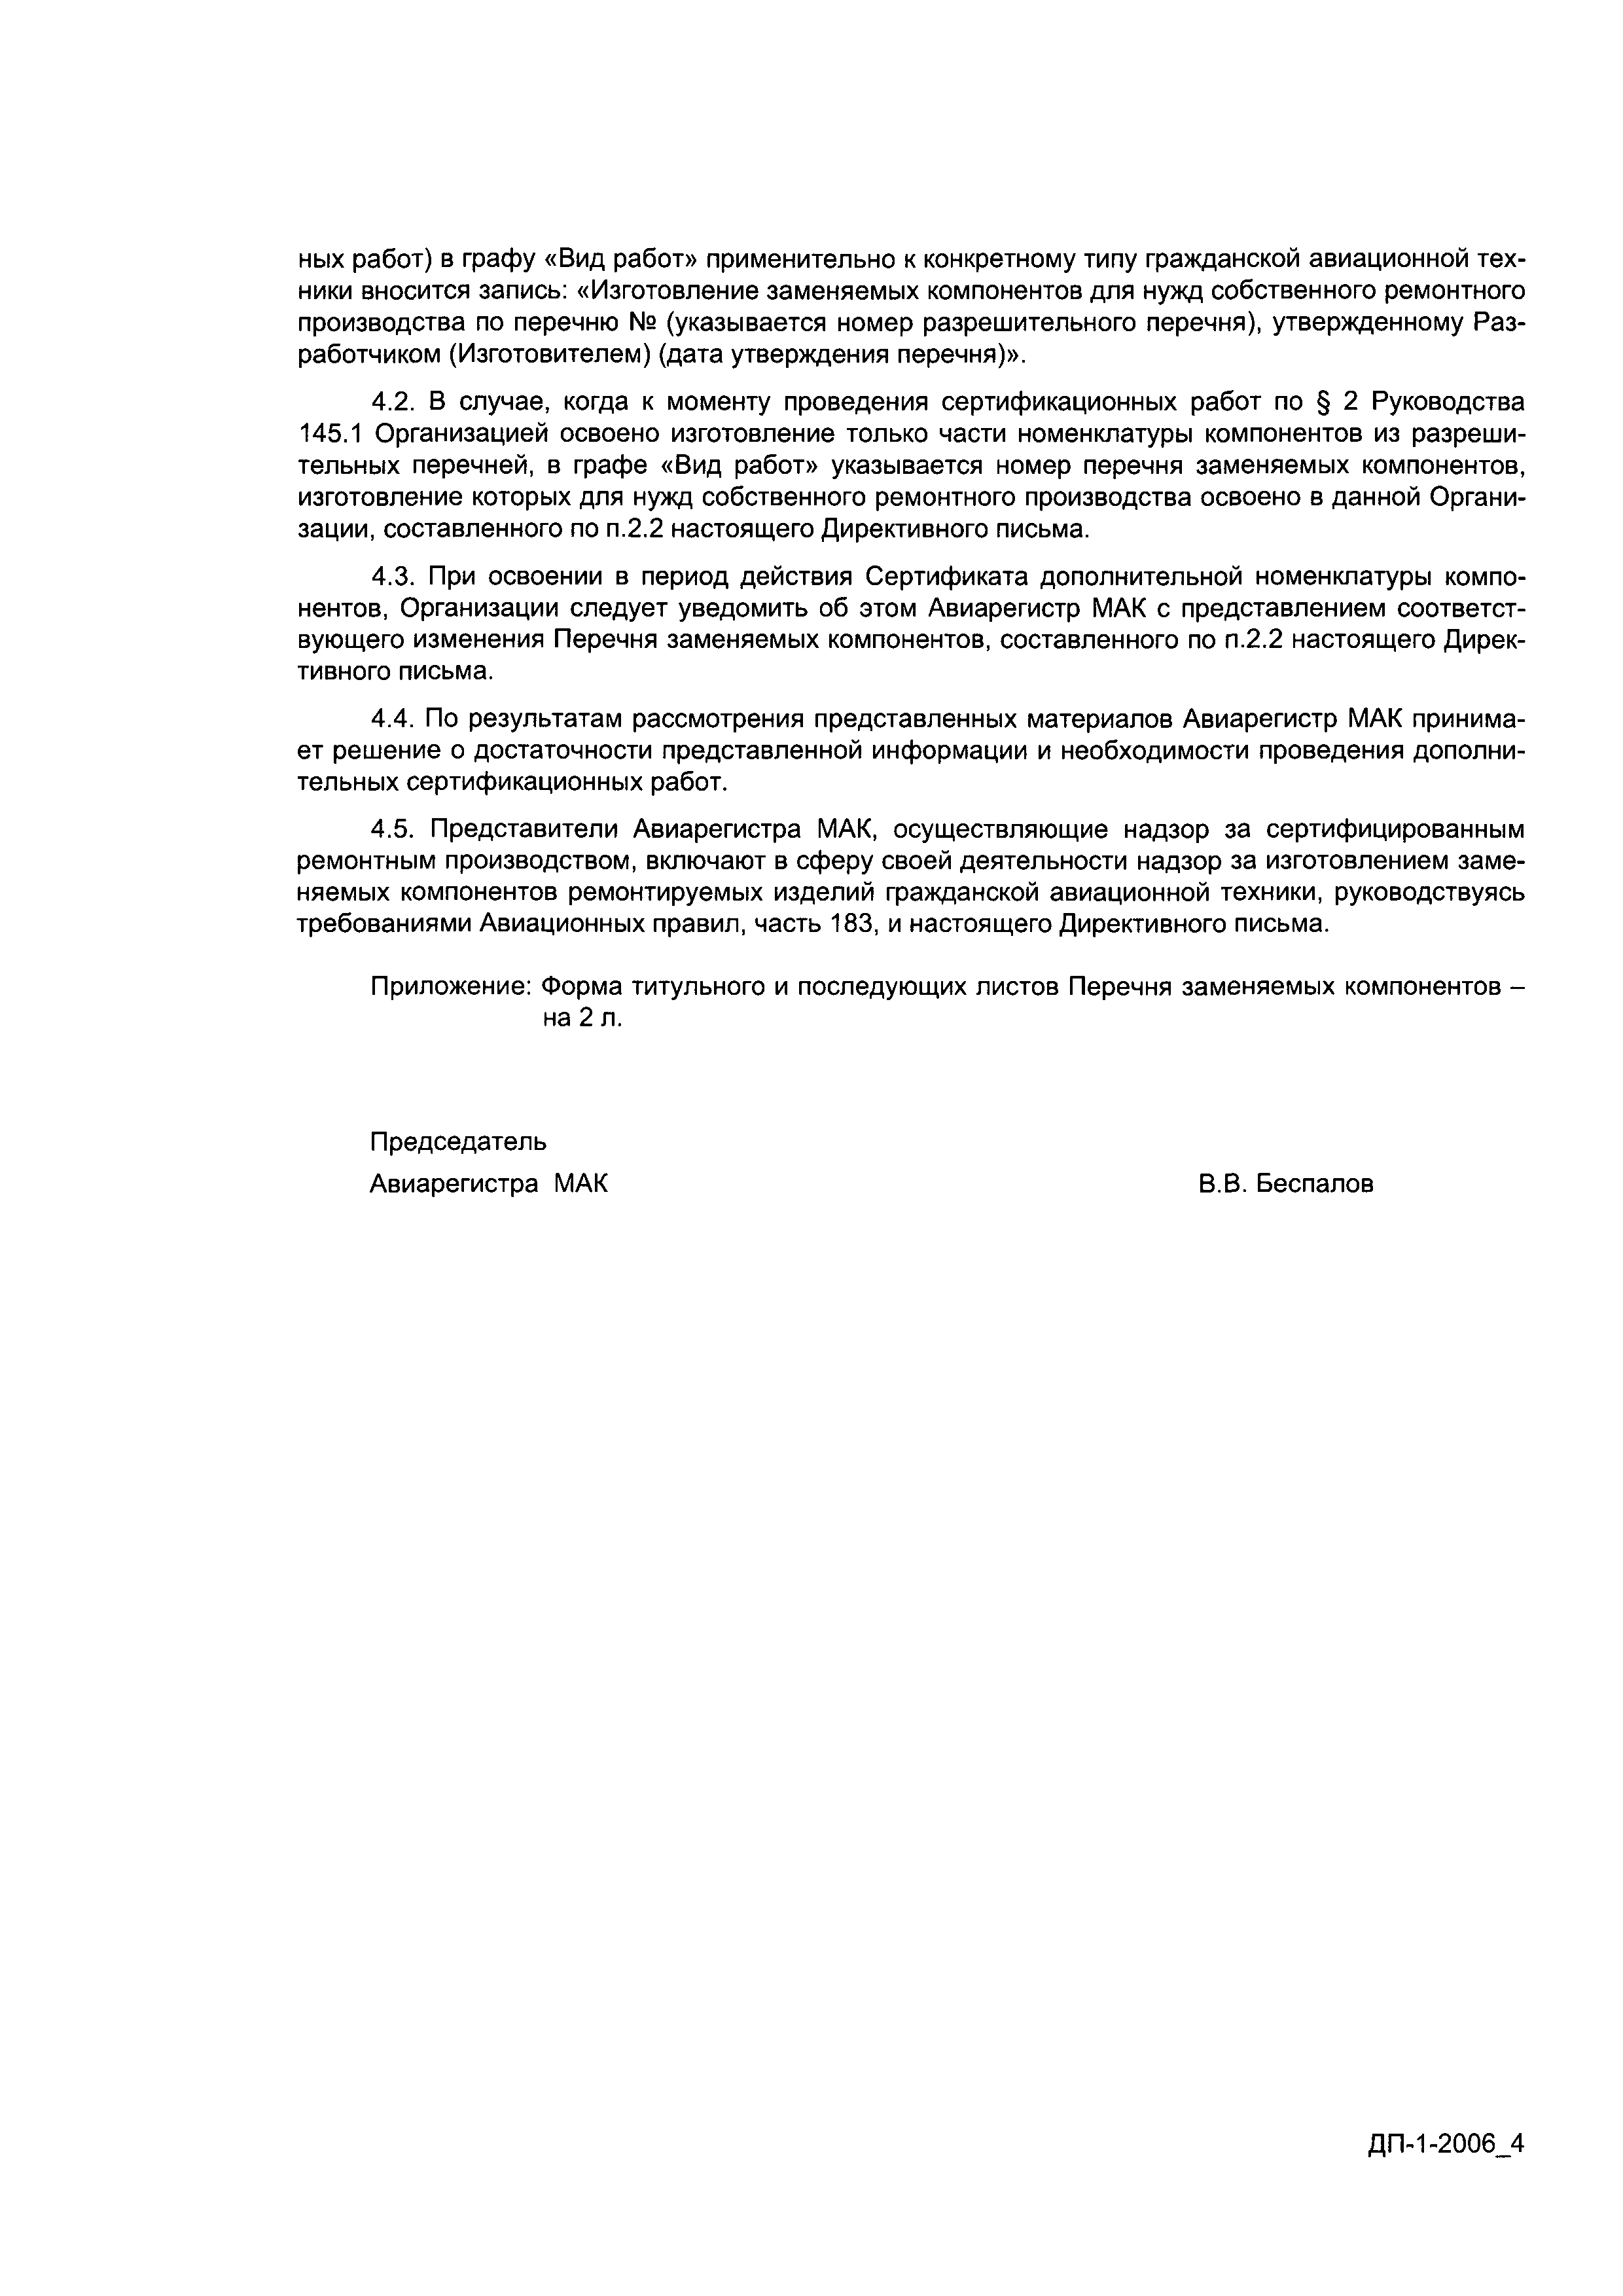 Директивное письмо 1-2006